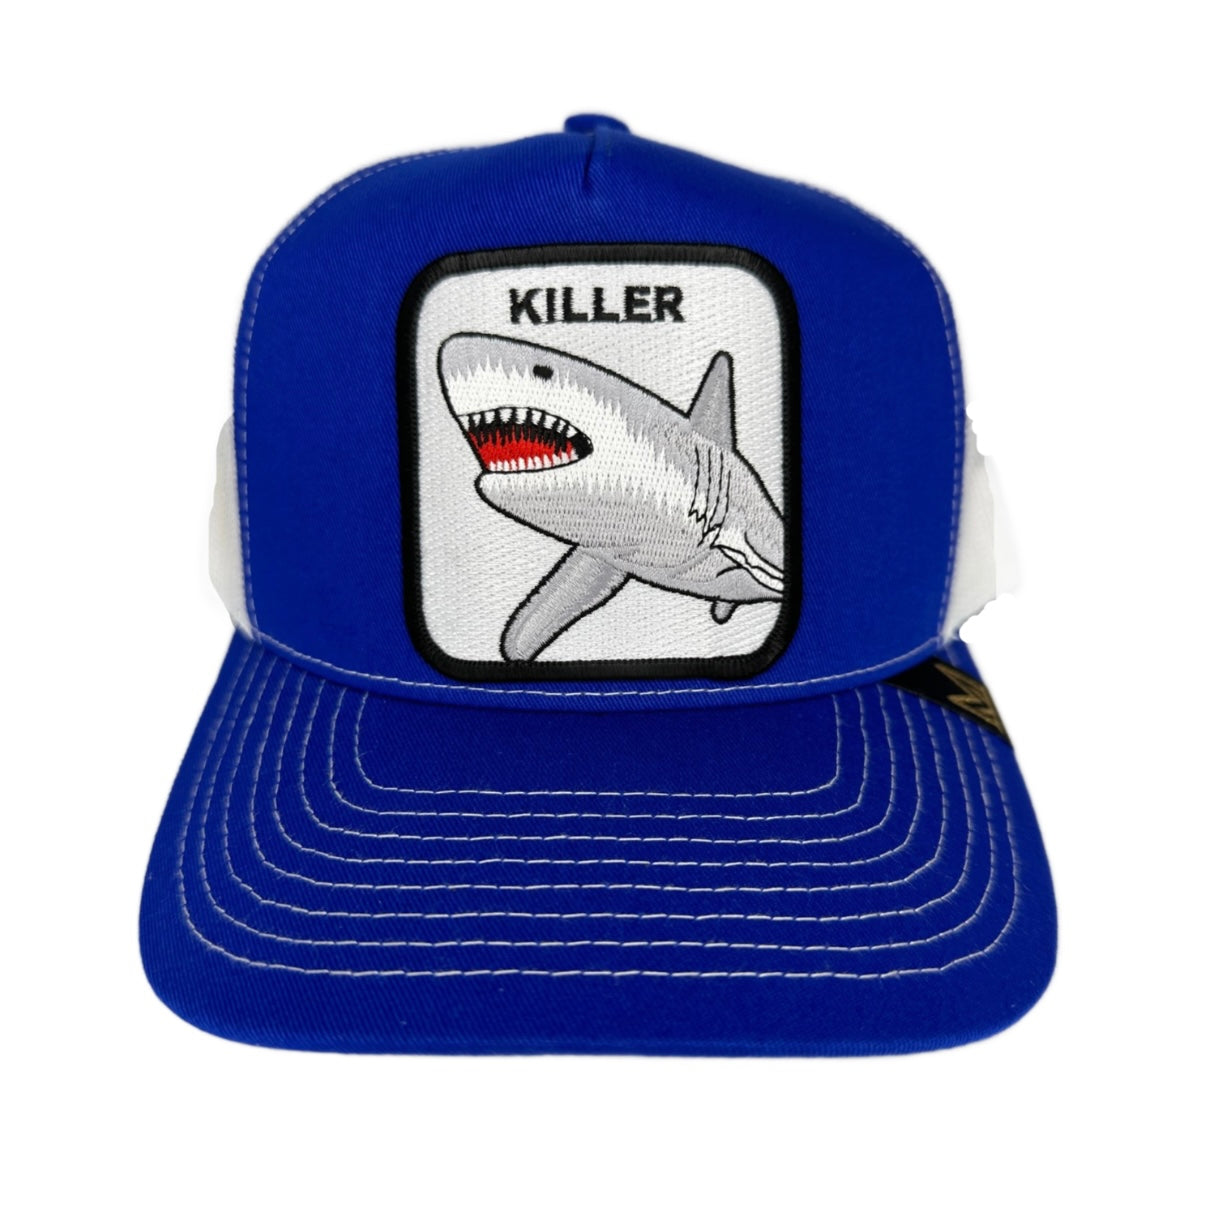 Killer Trucker Hat